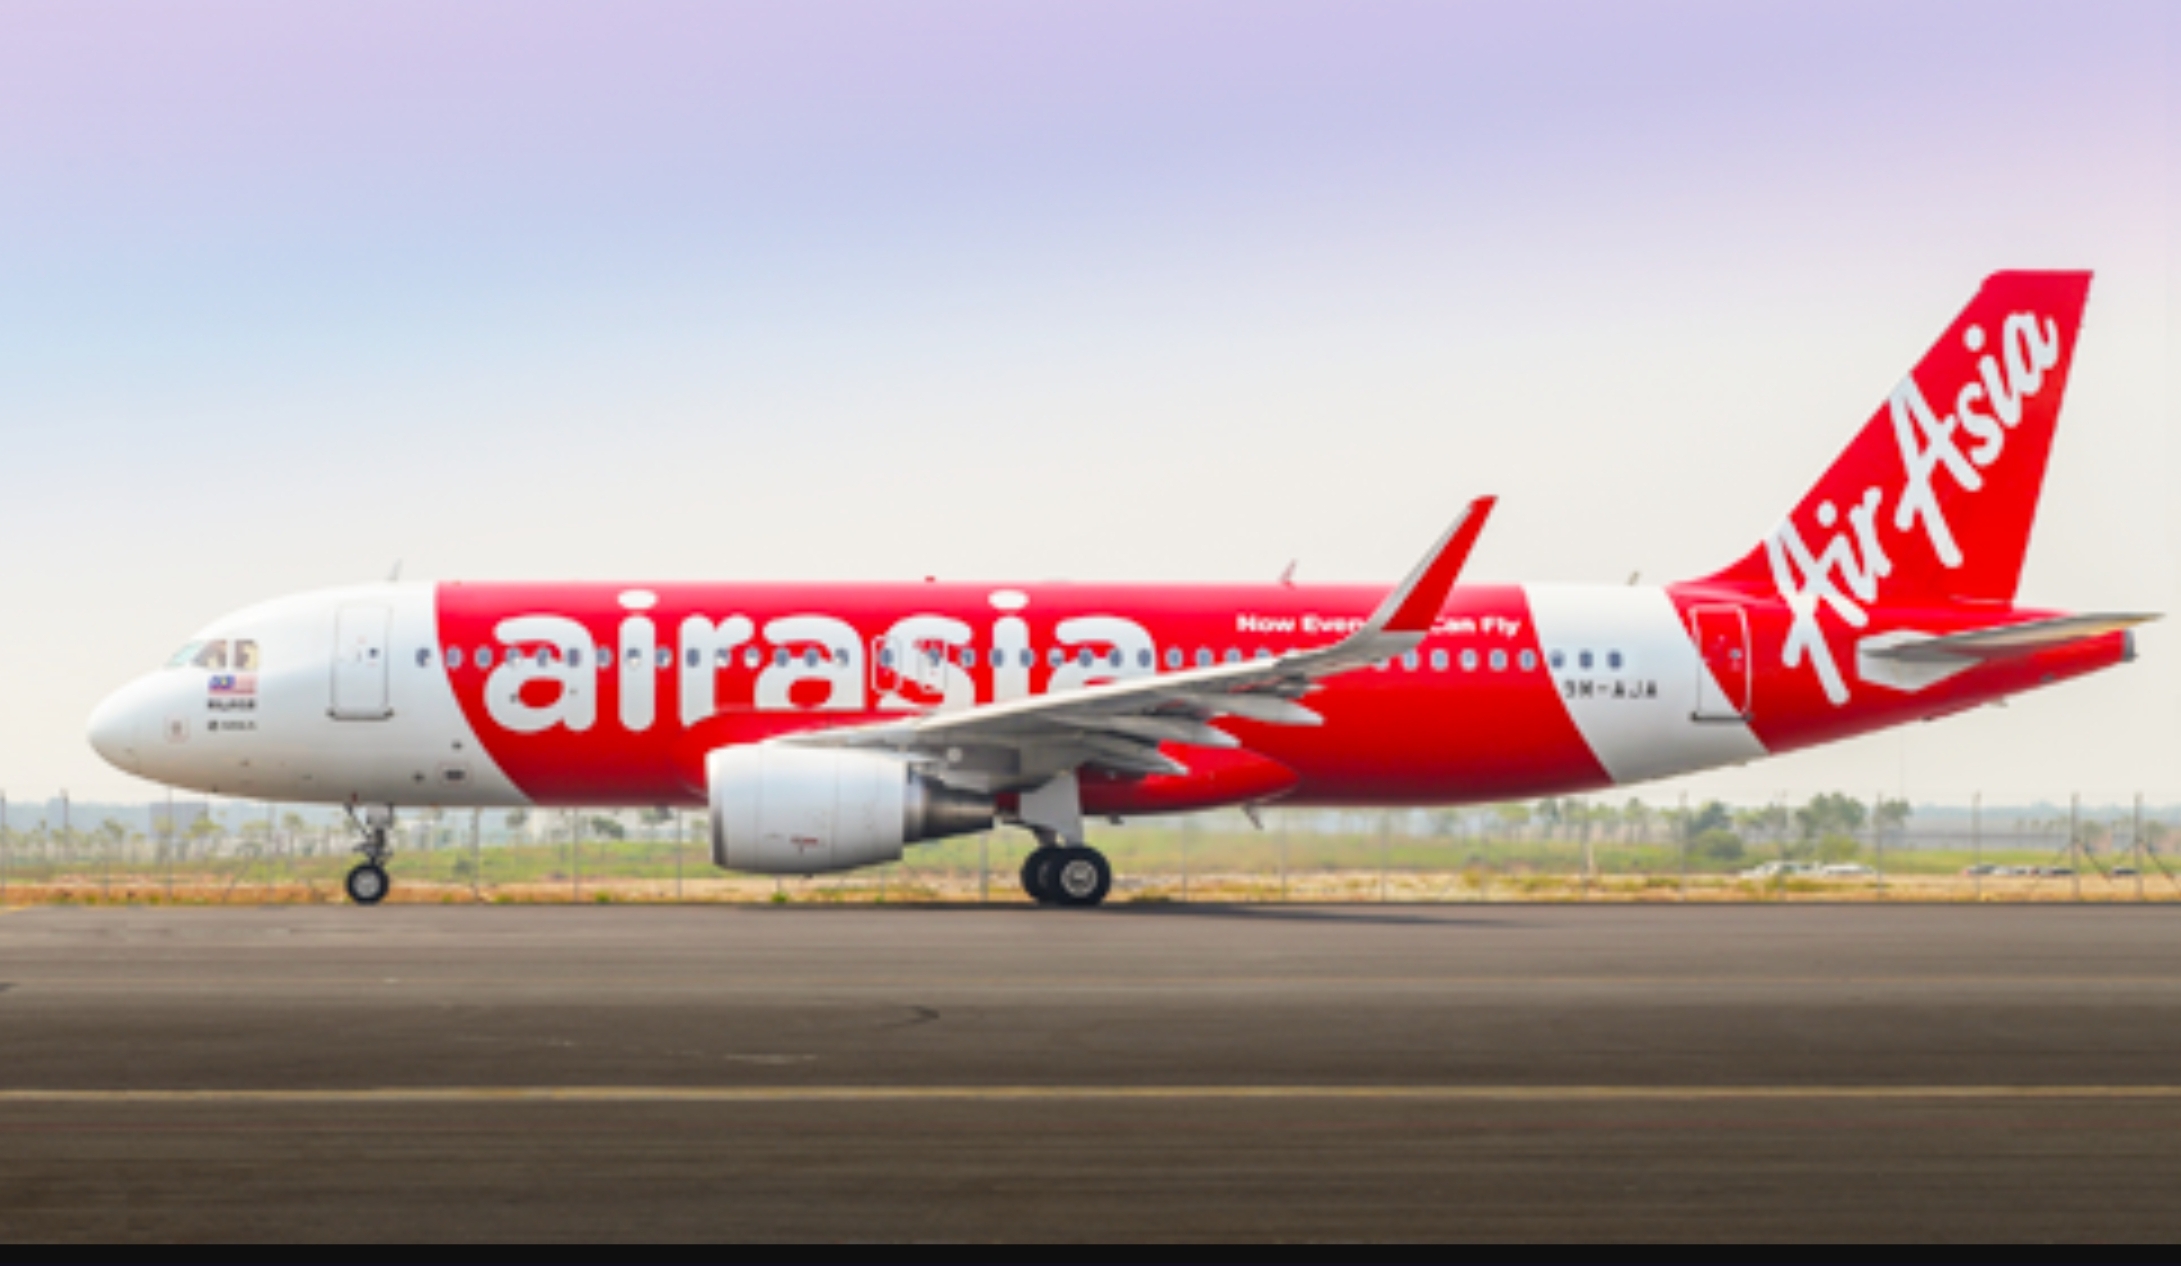 ASYIK! Airasia Buka Rute Penerbangan ke Bandara Kertajati, Tony Fernandes Minta Ini